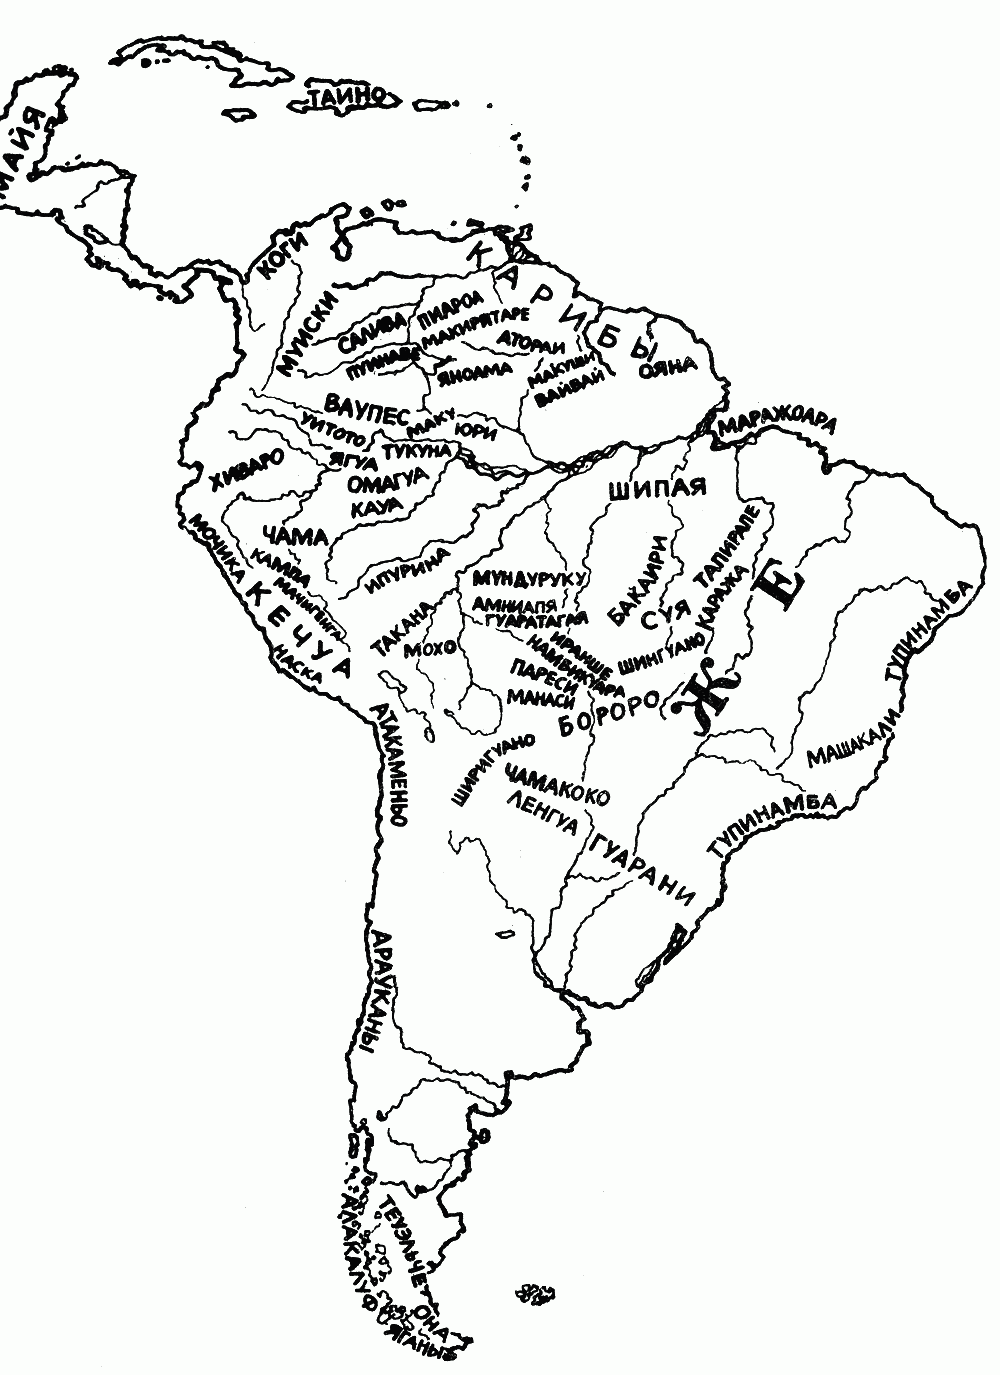 Крупнейшие реки южной америки на контурной карте. Карта расселения индейских племен Южной Америки. Племена индейцев Южной Америки на карте. Карта расселения индейцев Южной Америки. Карта племен индейцев Северной и Южной Америки.